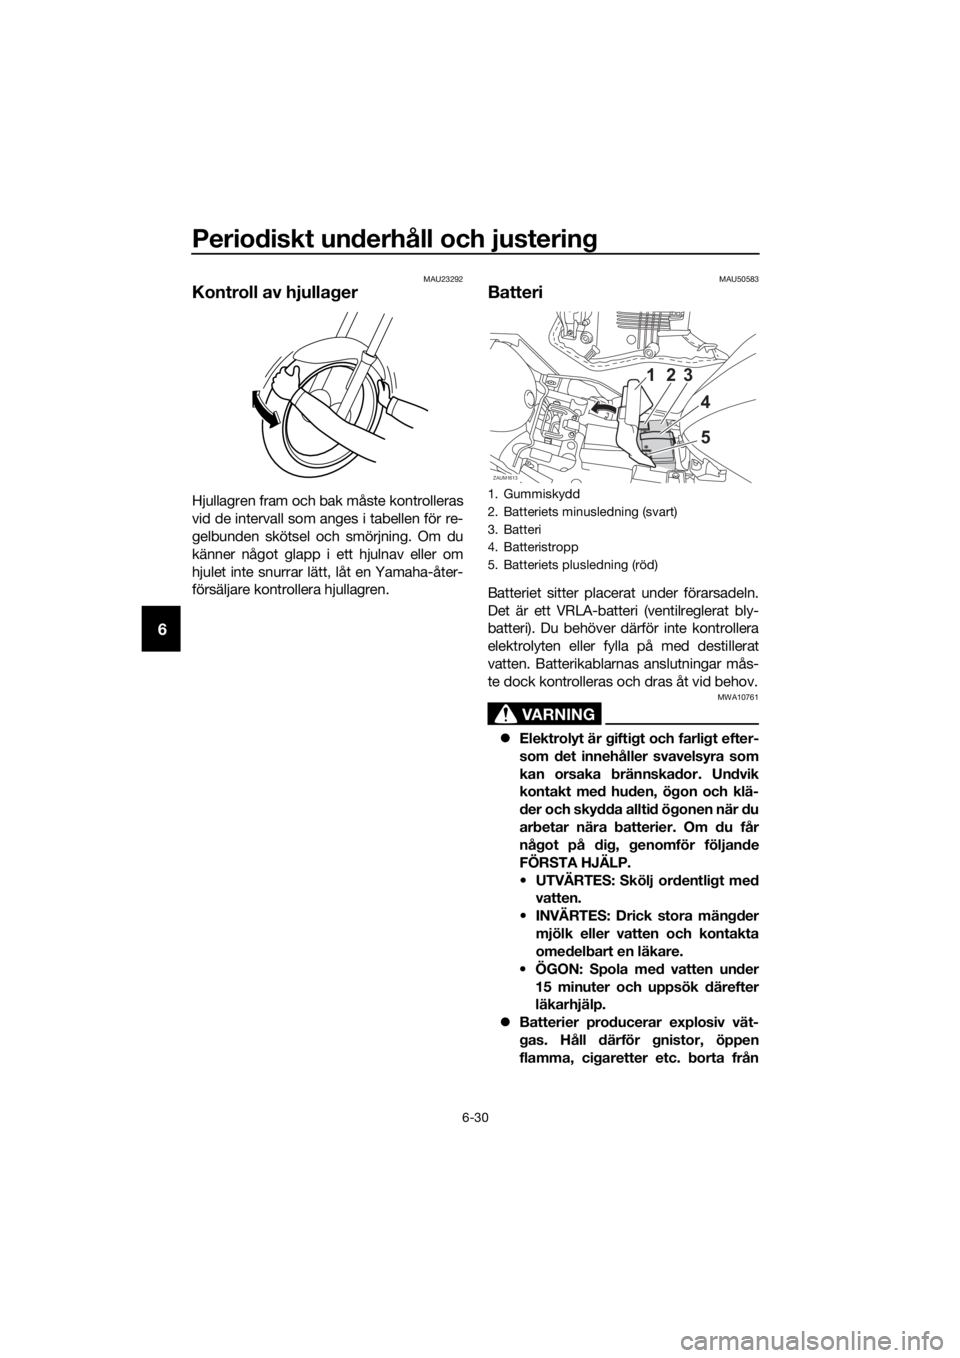 YAMAHA YZF-R125 2019  Bruksanvisningar (in Swedish) Periodiskt underhåll och justering
6-30
6
MAU23292
Kontroll av hjullager
Hjullagren fram och bak måste kontrolleras
vid de intervall som anges i tabellen för re-
gelbunden skötsel och smörjning. 